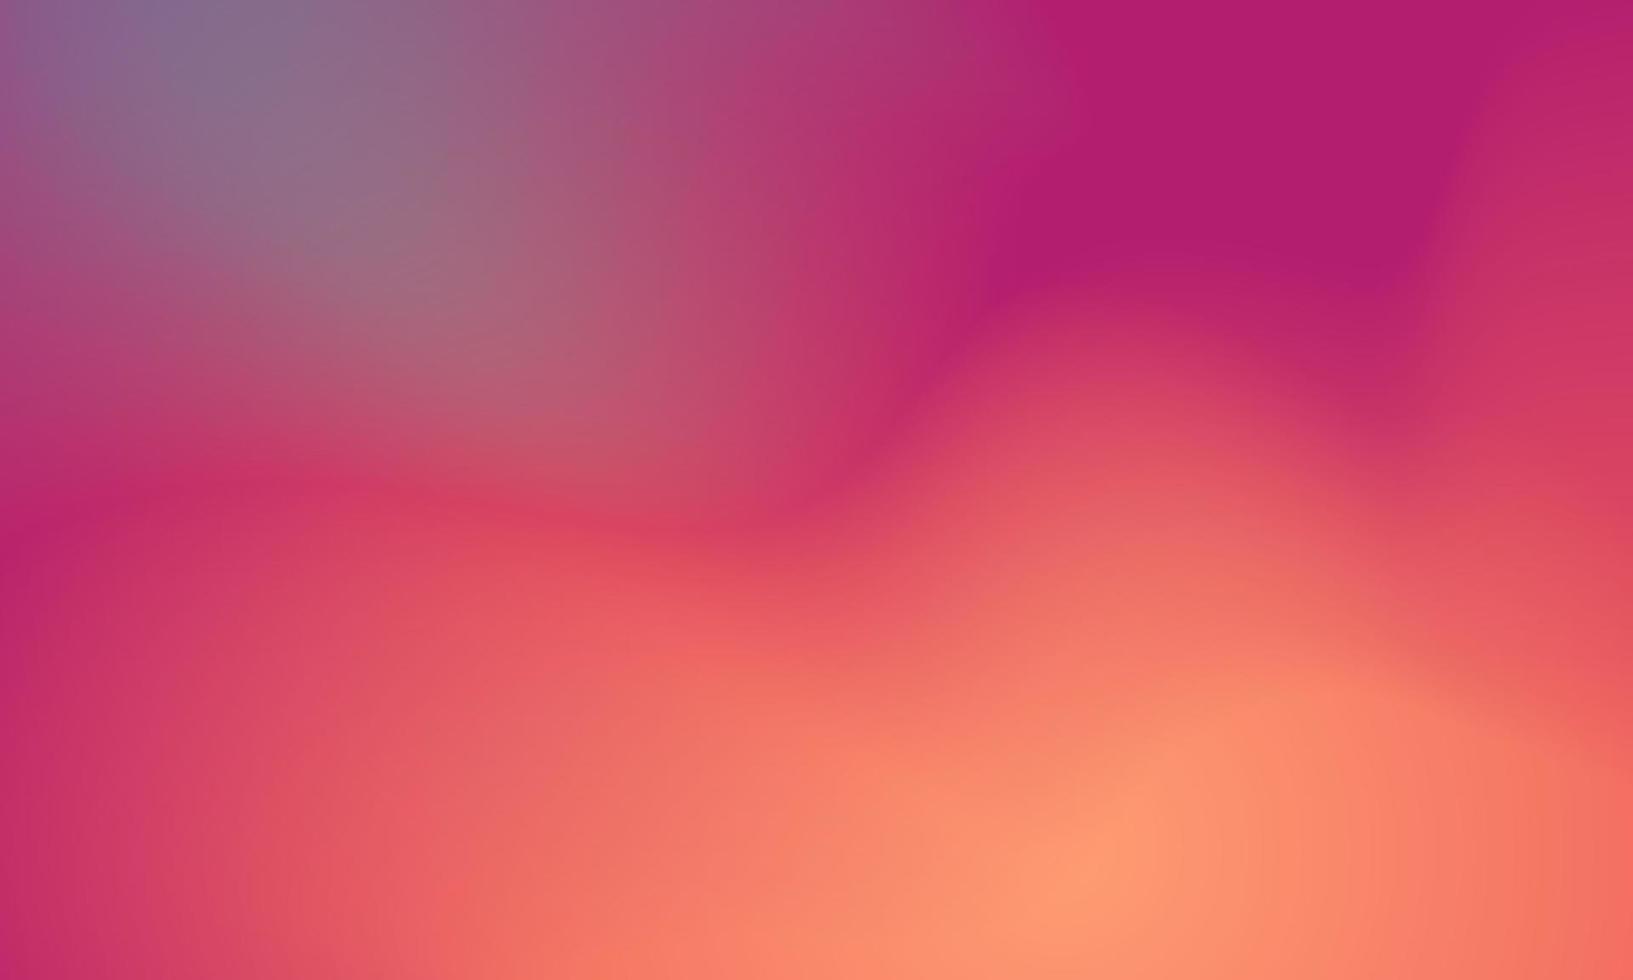 mooie kleurrijke gradiëntachtergrond vector